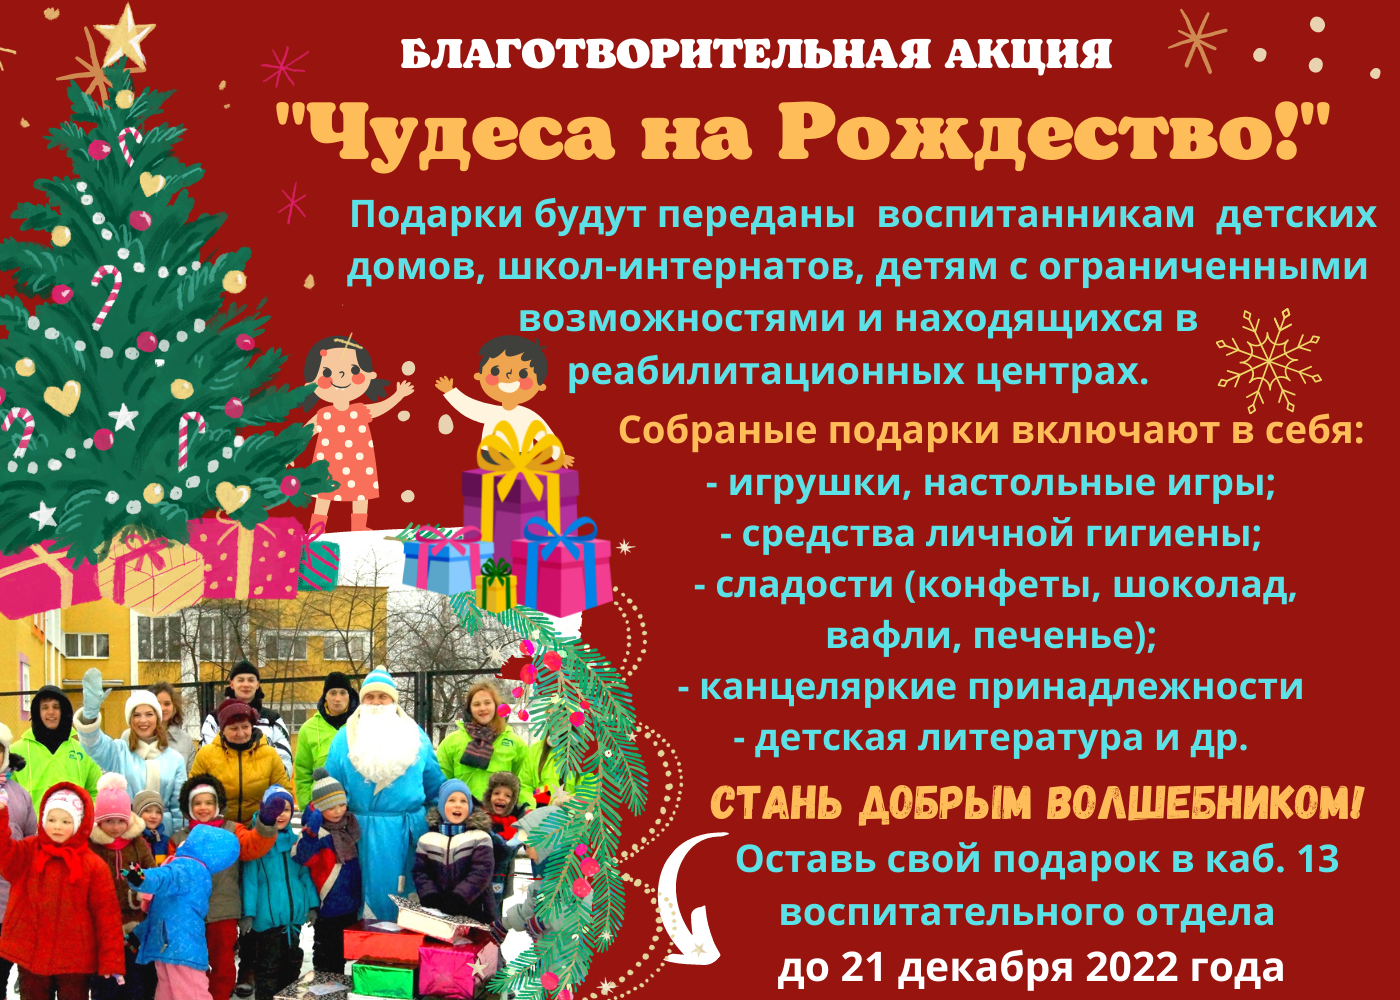 Простые мечты — заветные желания: в Могилевской области стартовала акция «Чудеса на Рождество»